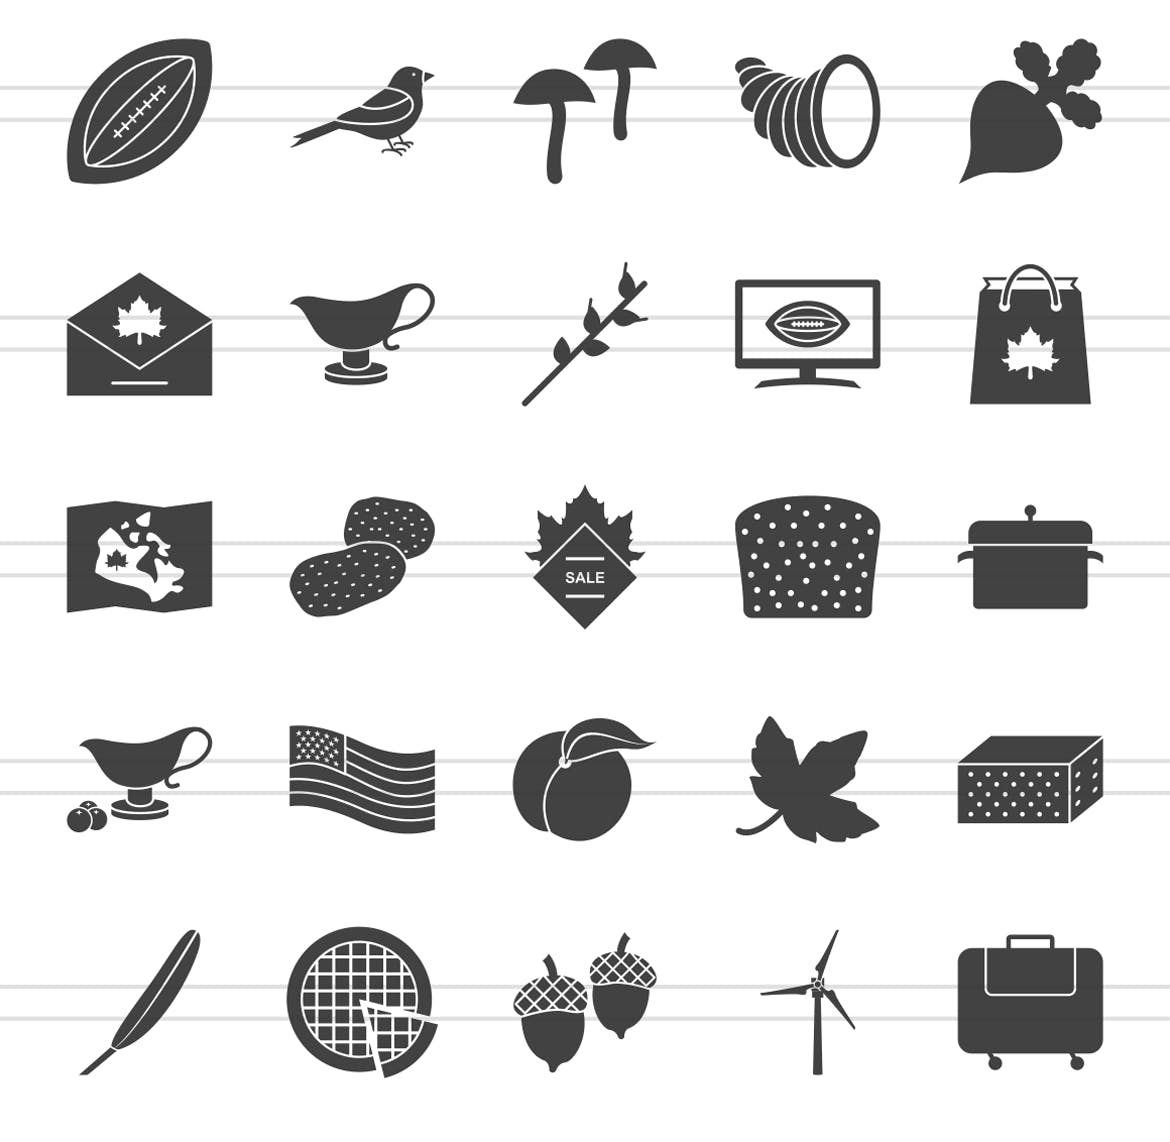 50枚感恩节主题矢量字体第一素材精选图标 50 Thanksgiving Glyph Icons插图(2)